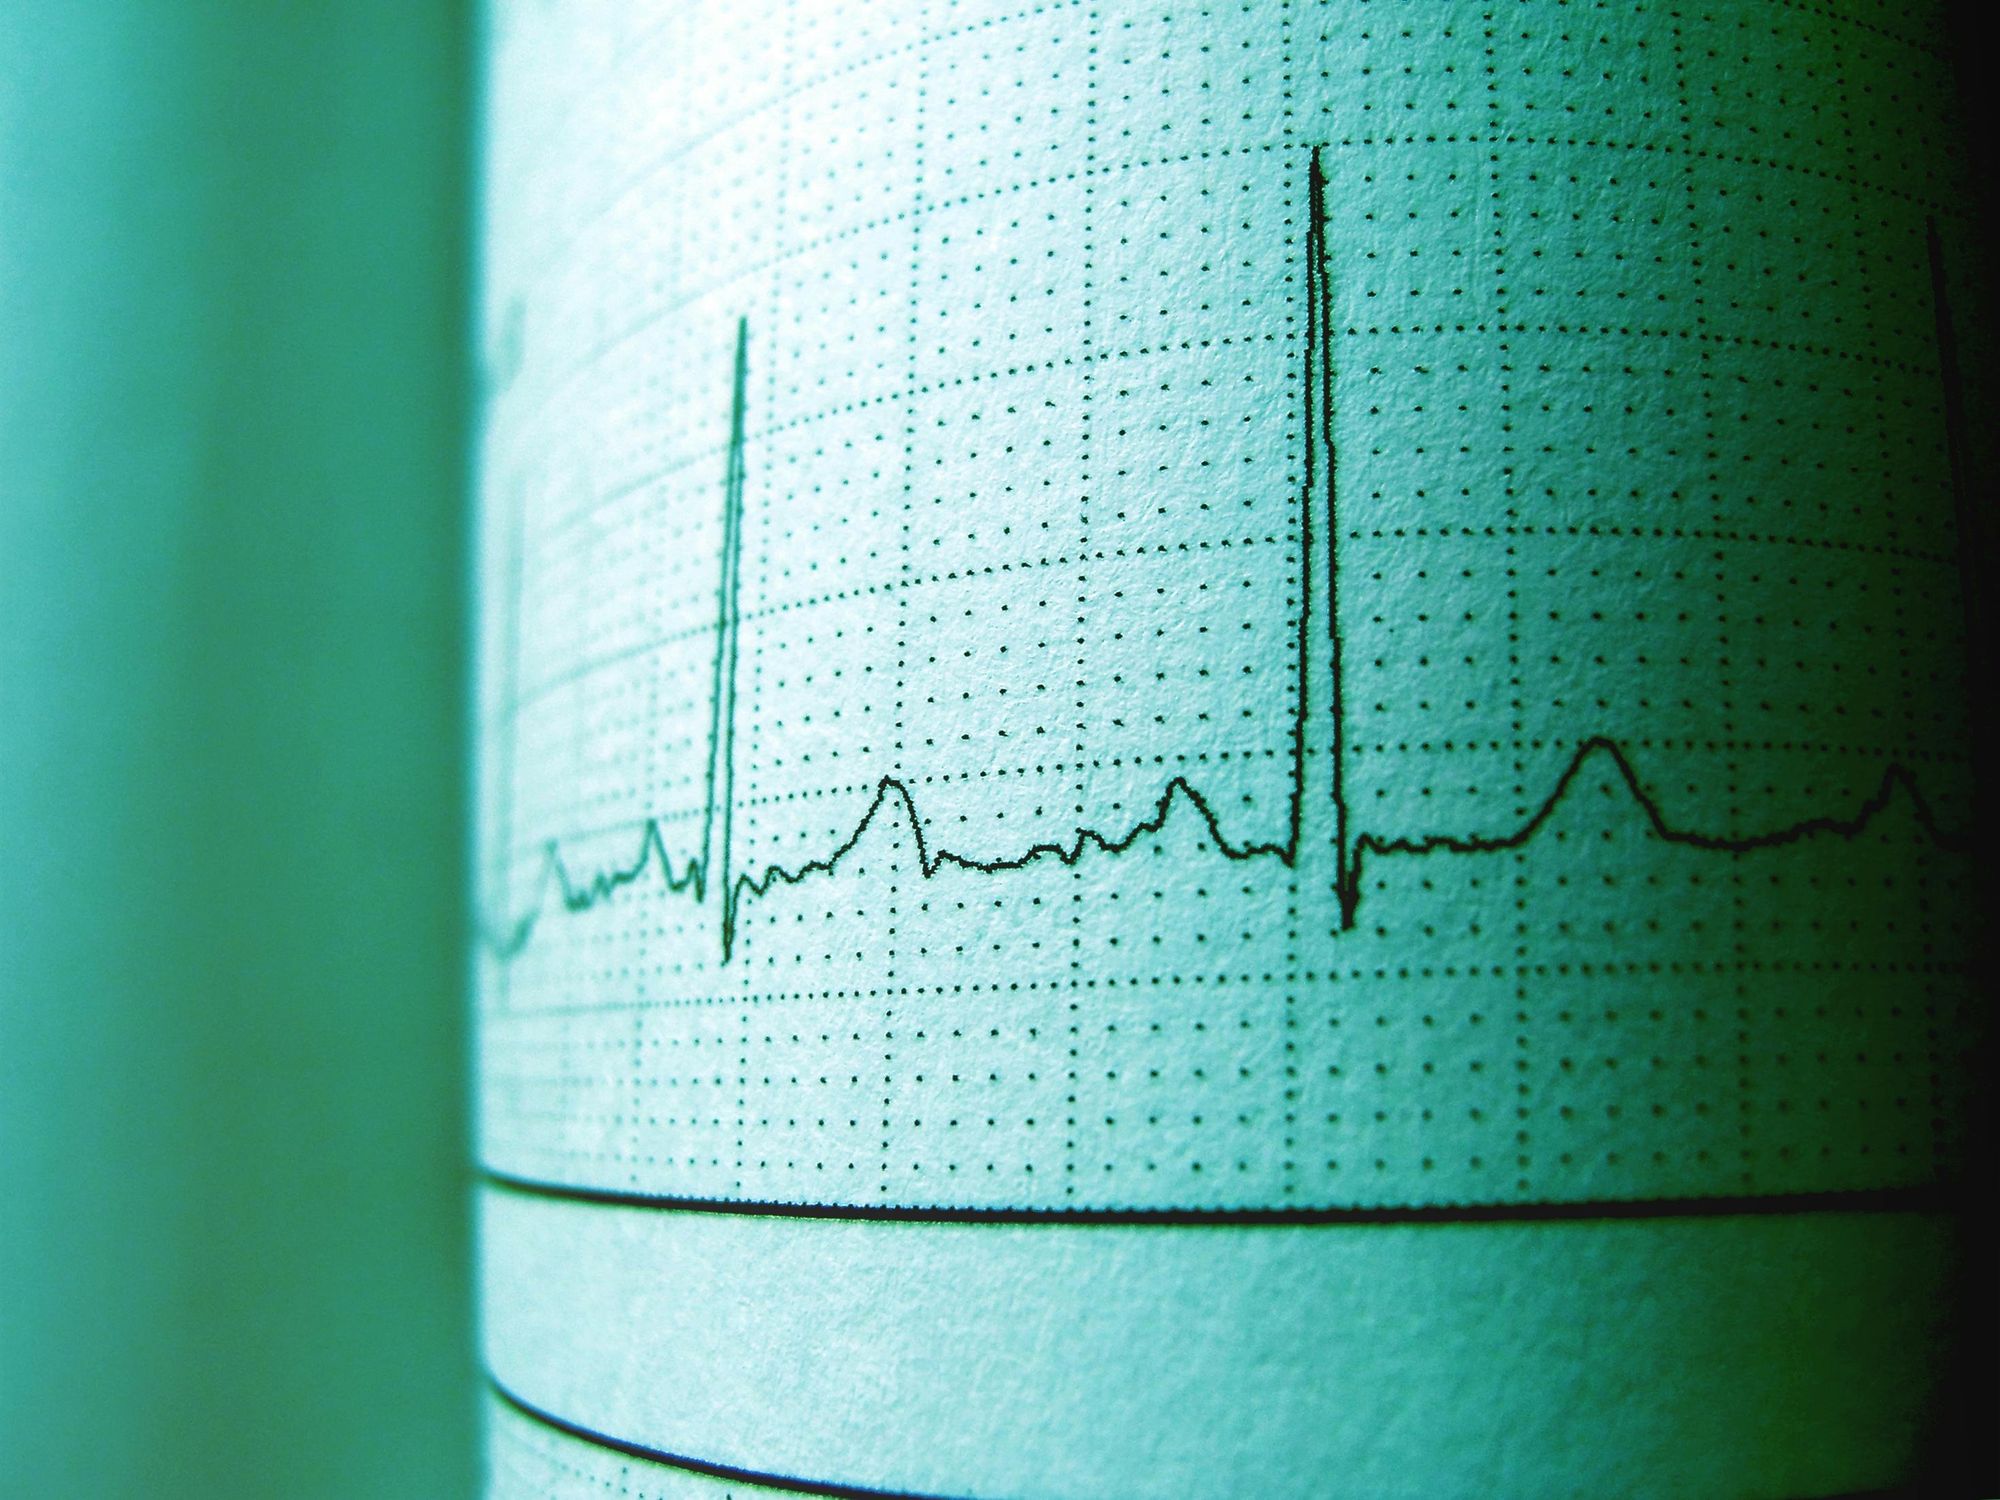 electrocardiogram graph displaying cardiac activity